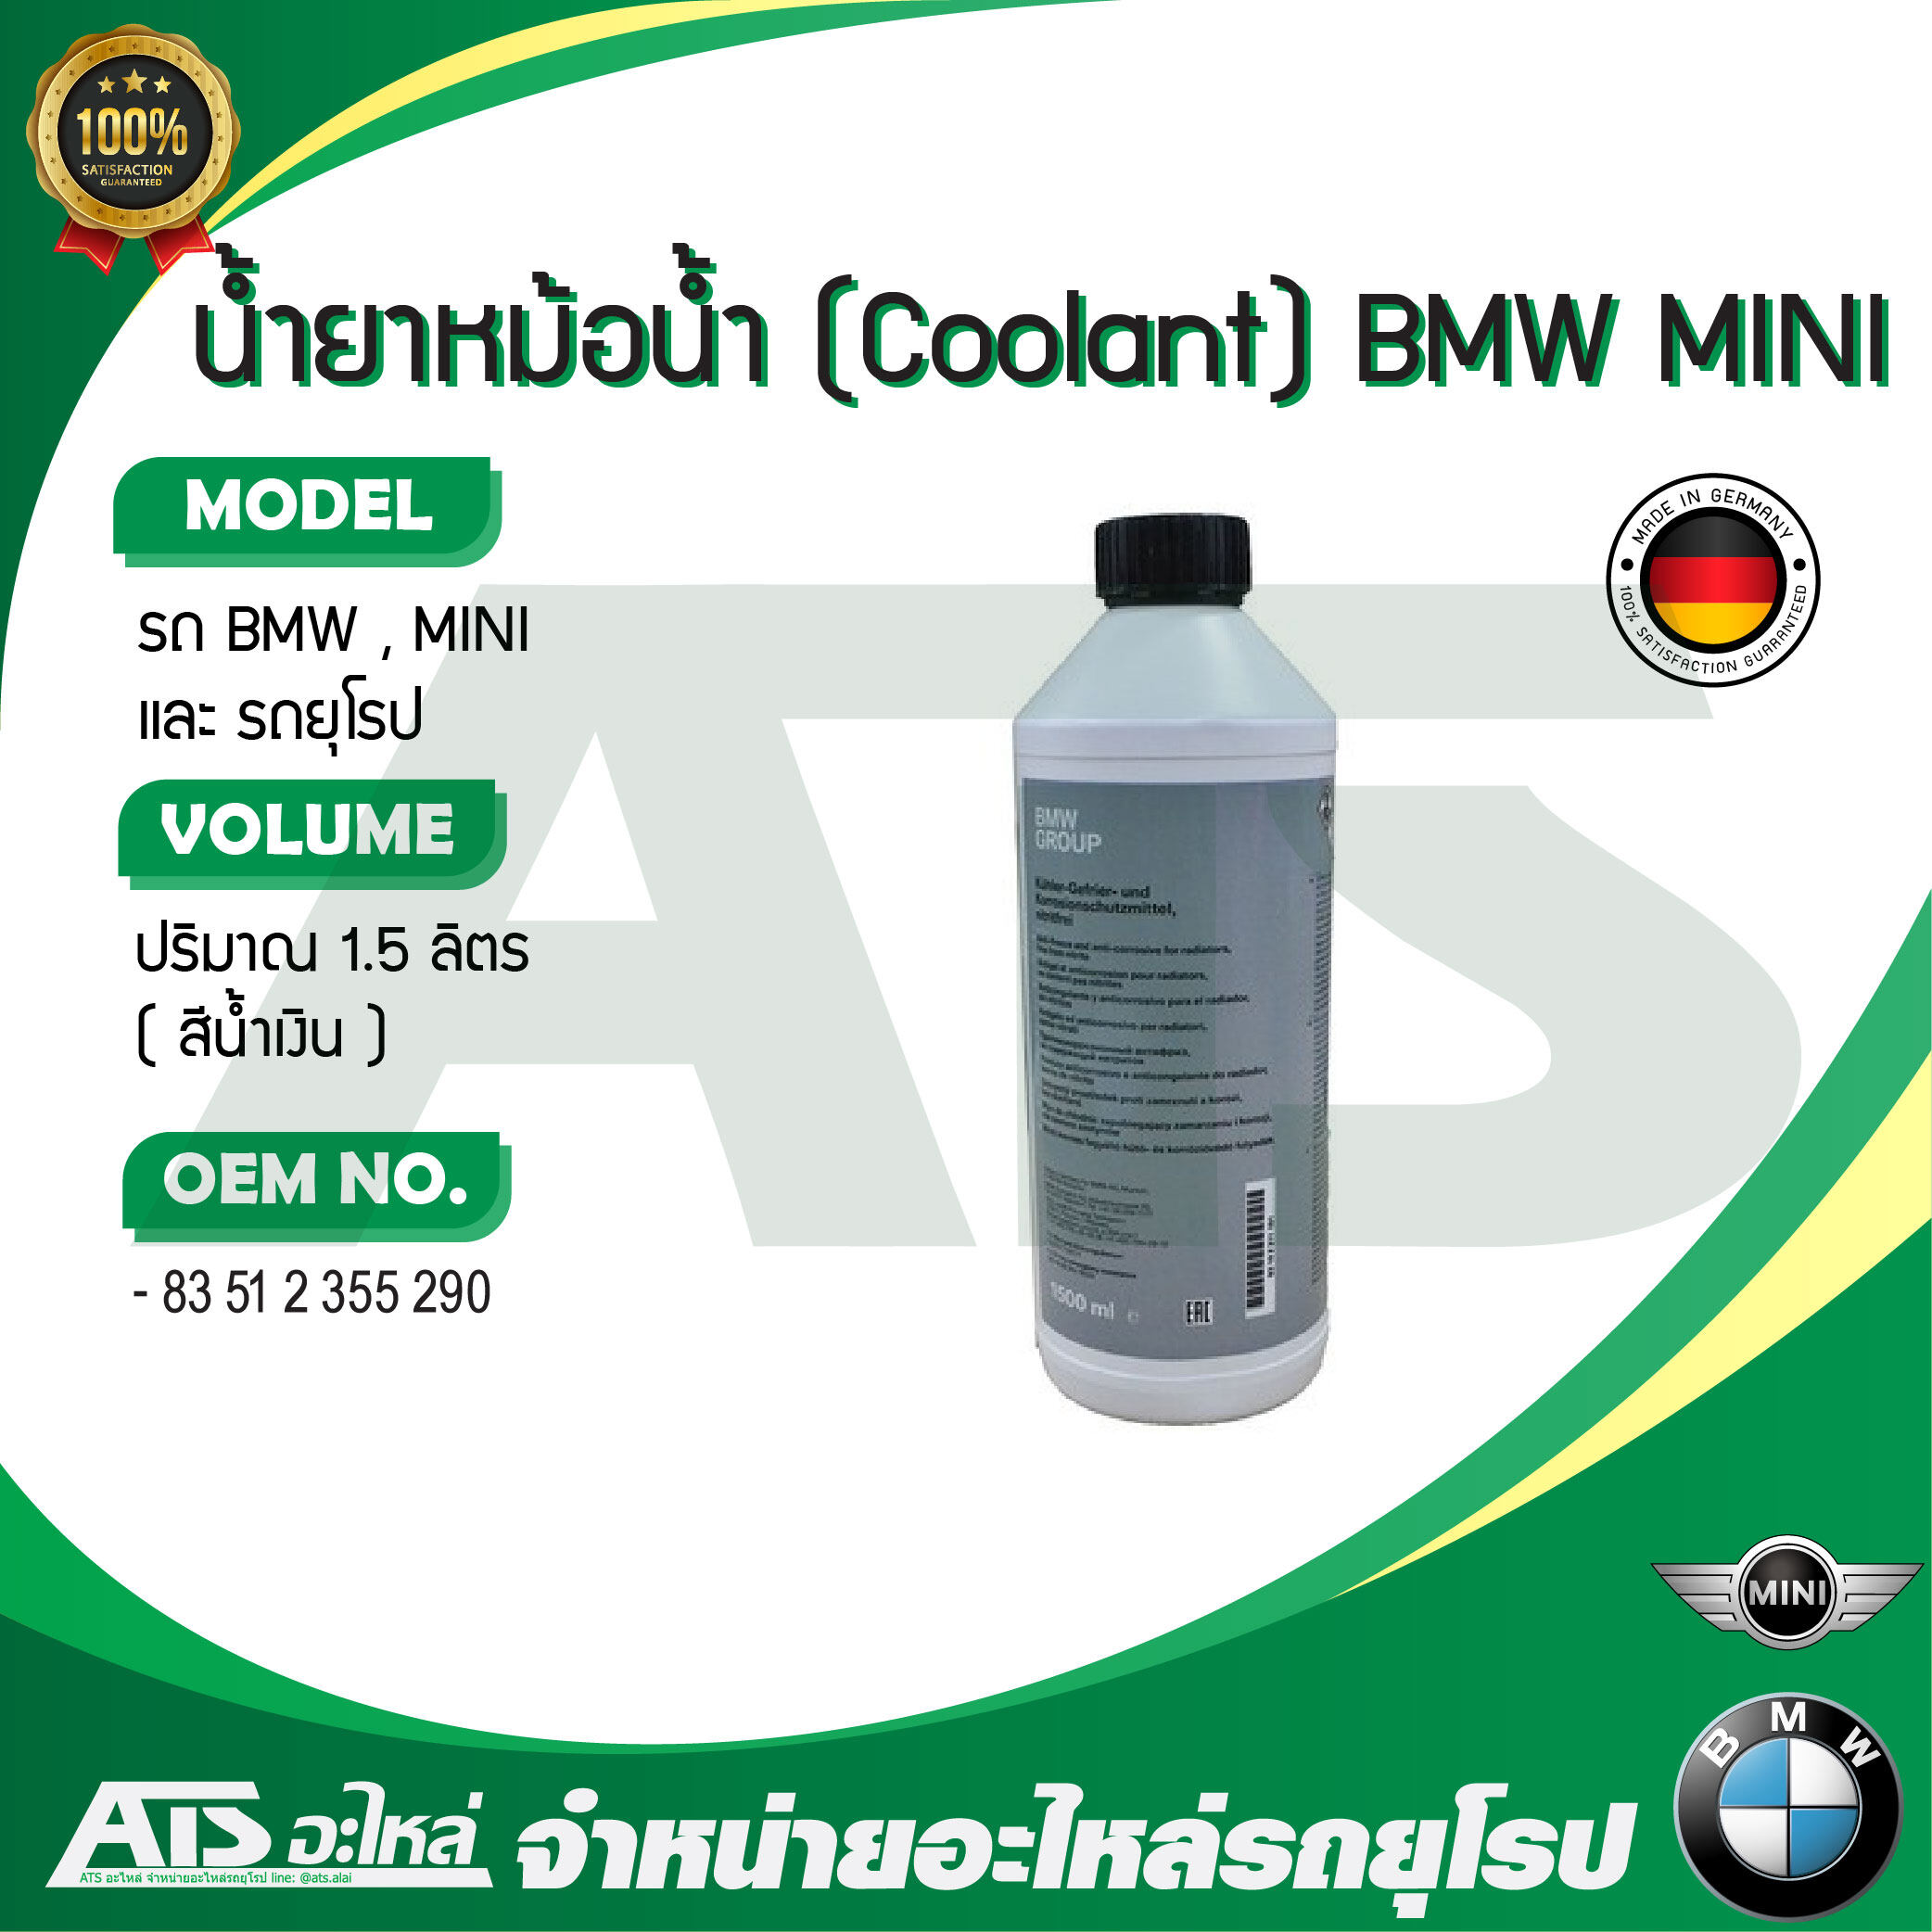 น้ำยาหม้อน้ำ น้ำยาหล่อเย็น (Coolant) BMW / MINI ชนิดเข้มข้น ขนาด 1.5 ลิตร น้ำสีน้ำเงิน (OE No. 83 51 2 355 290) Made in Germany